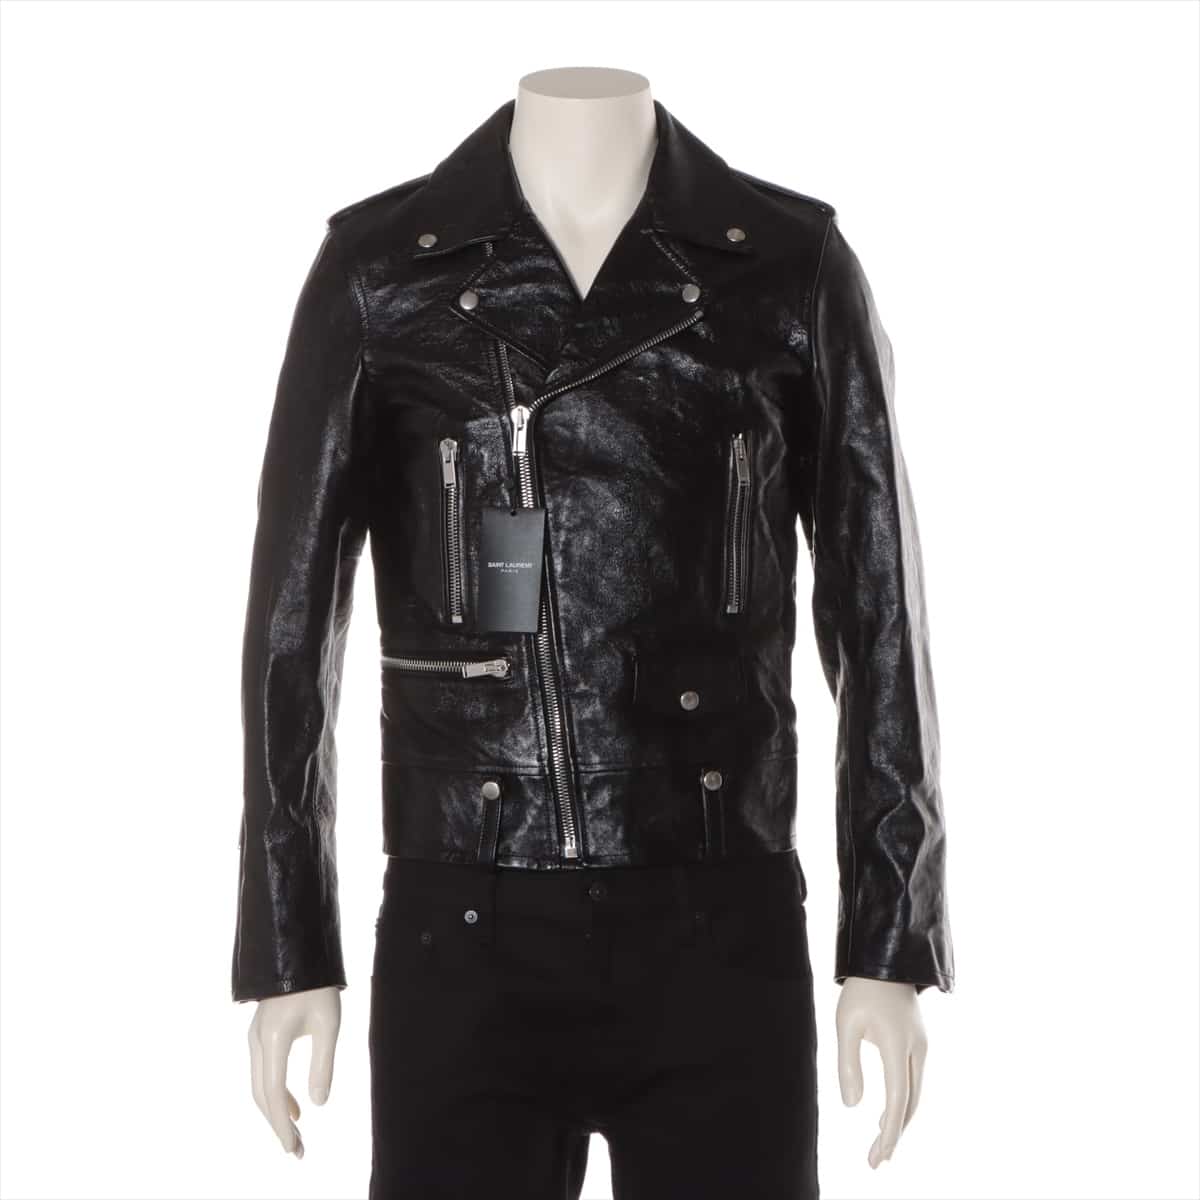 Saint Laurent Paris 20 years calf Leather jacket 44 Men's Black  484284 classic motorcycles batting